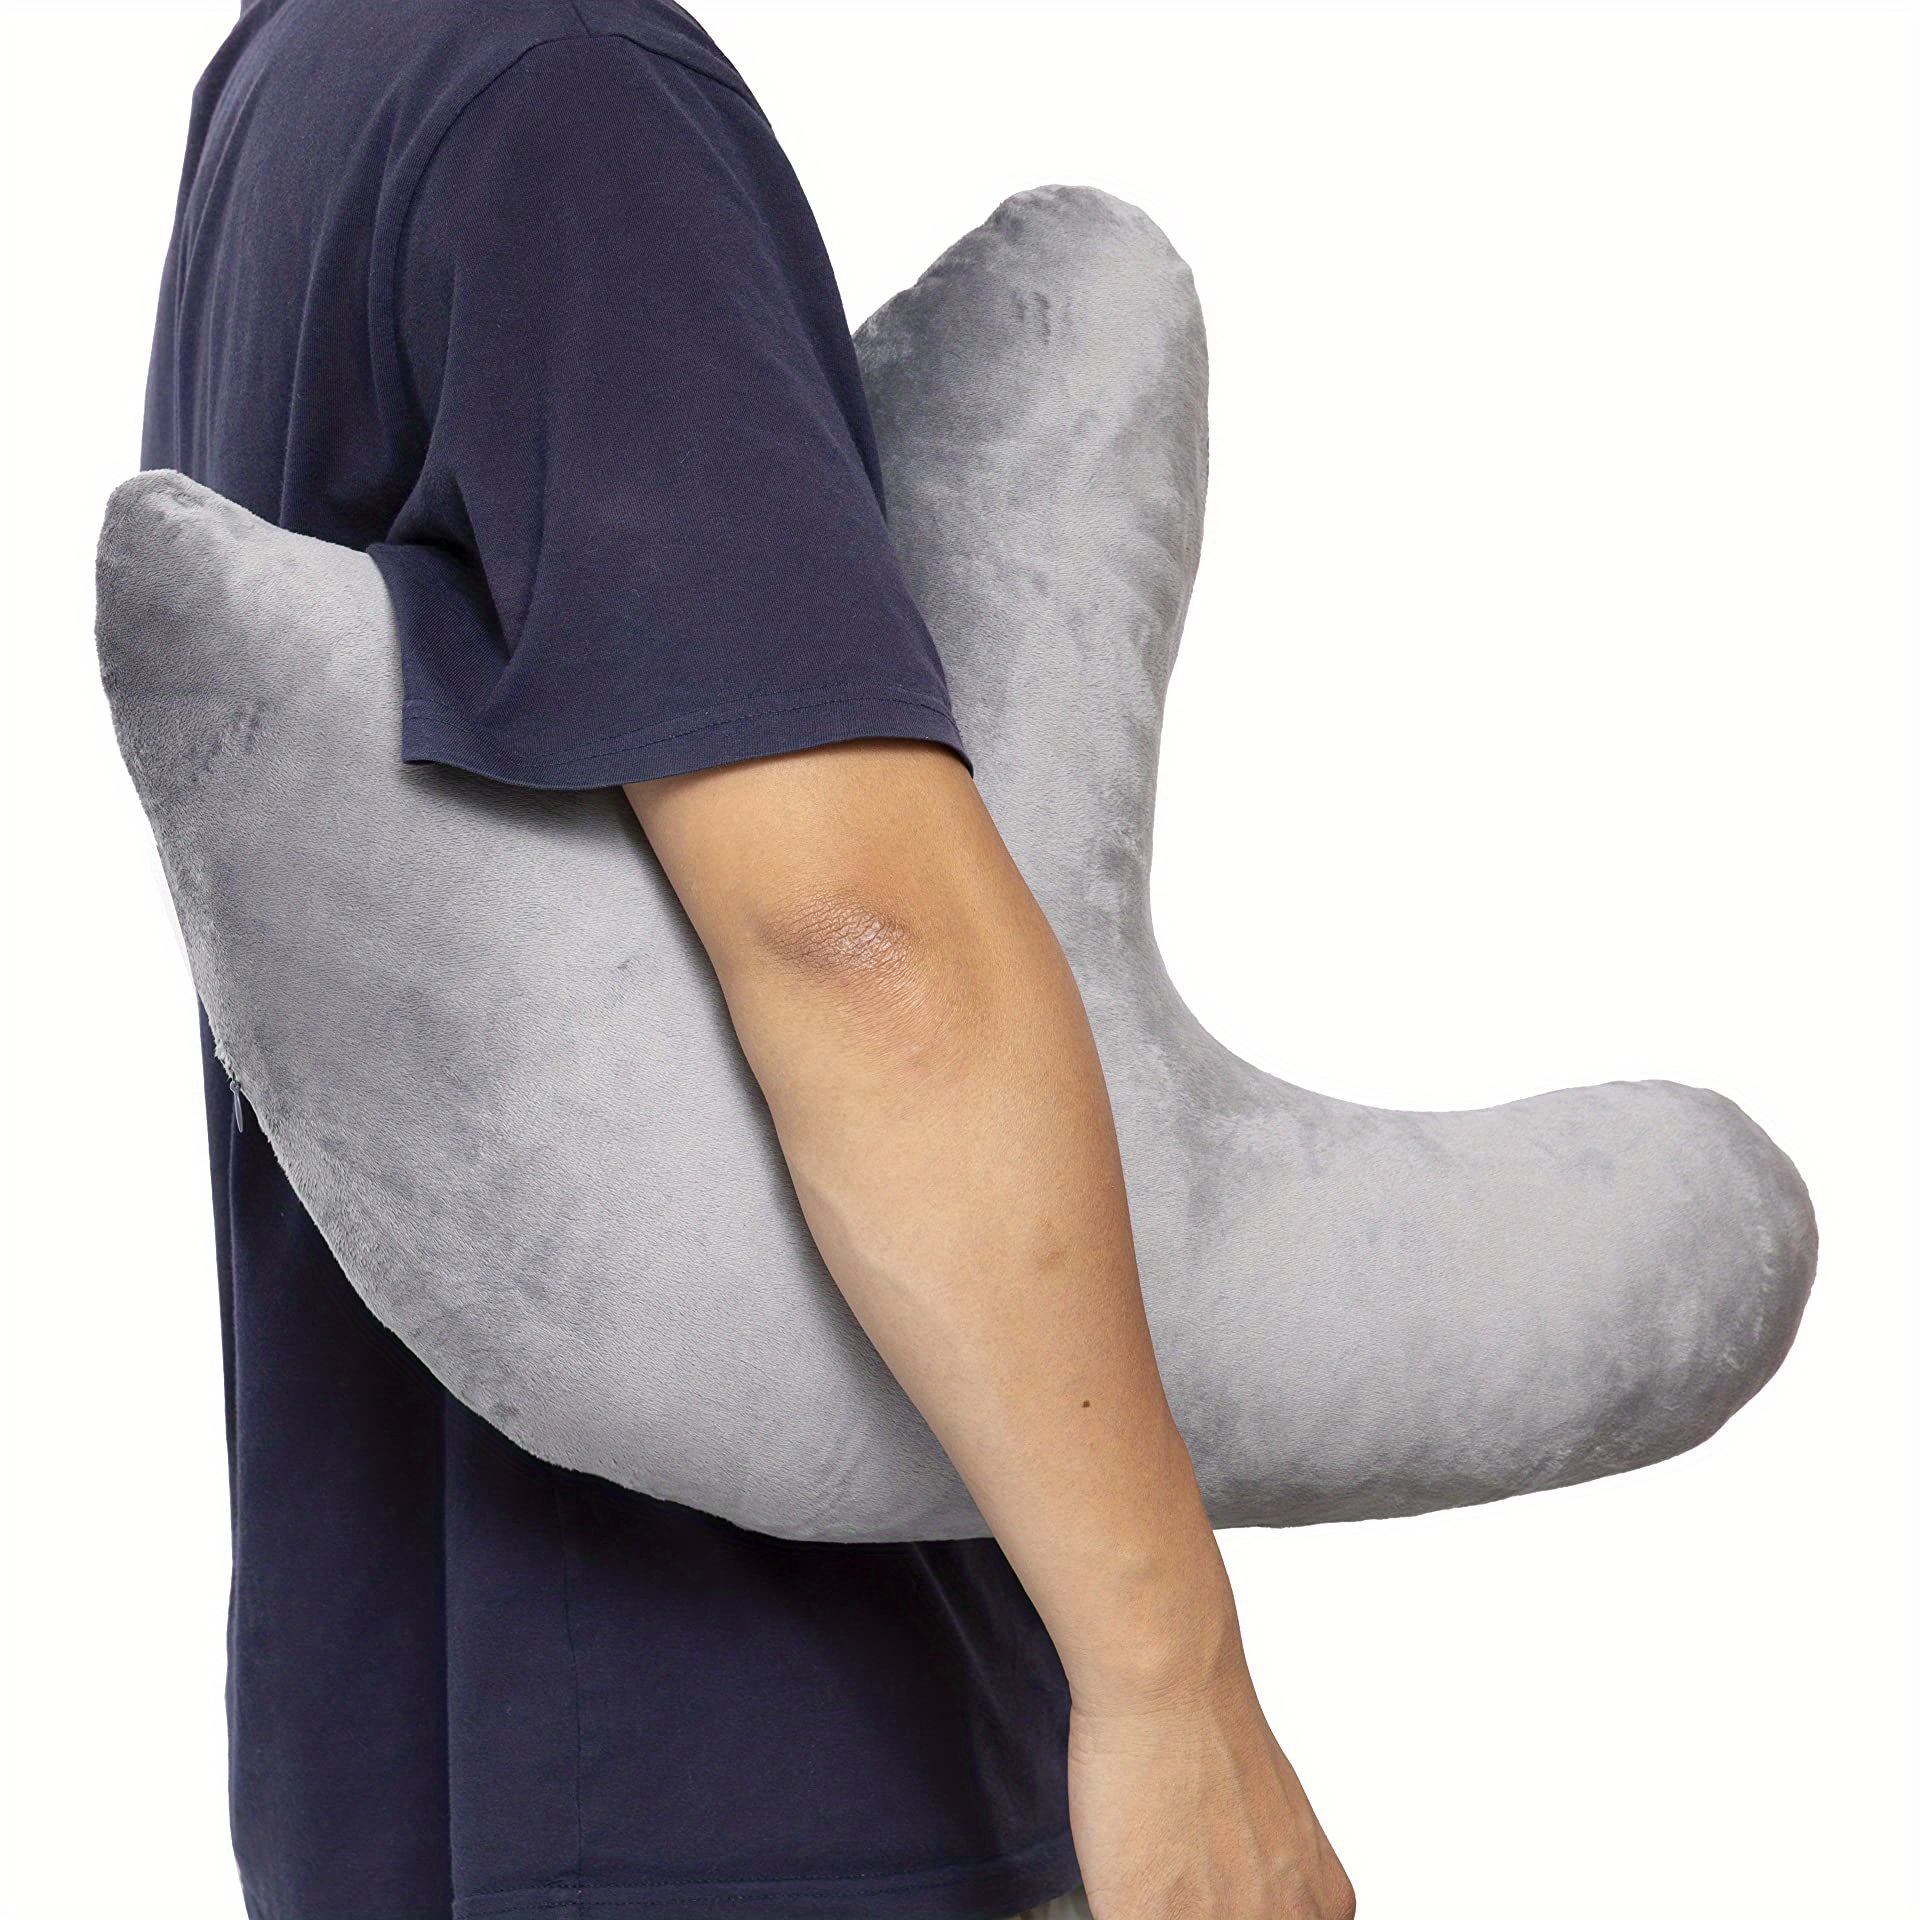  Shoulder Surgery Pillow for Shoulder Support - Rotator